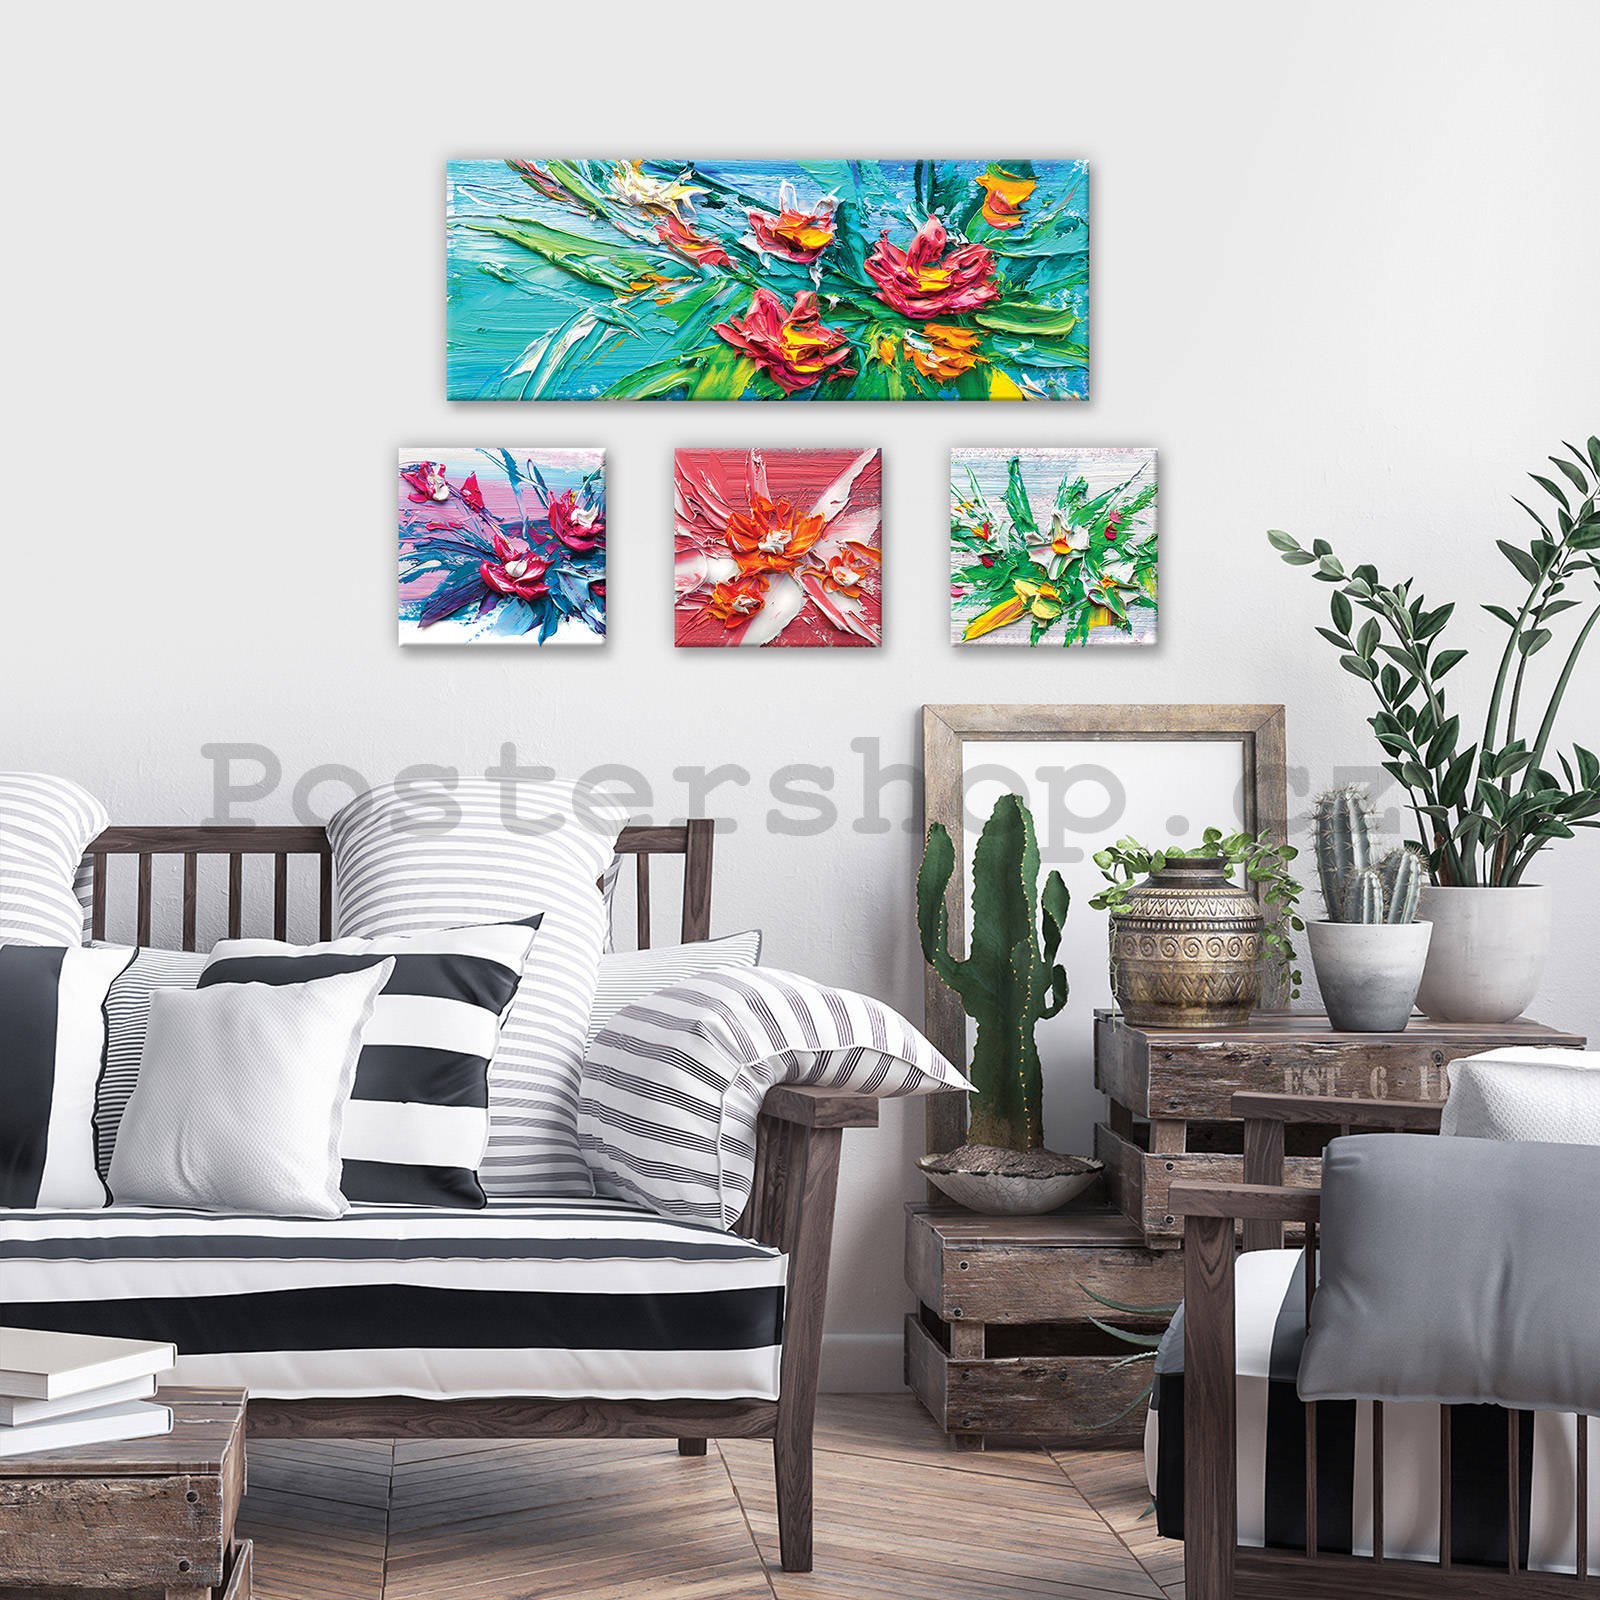 Obraz na plátně: Květiny malované - set 1ks 80x30 cm a 3ks 25,8x24,8 cm